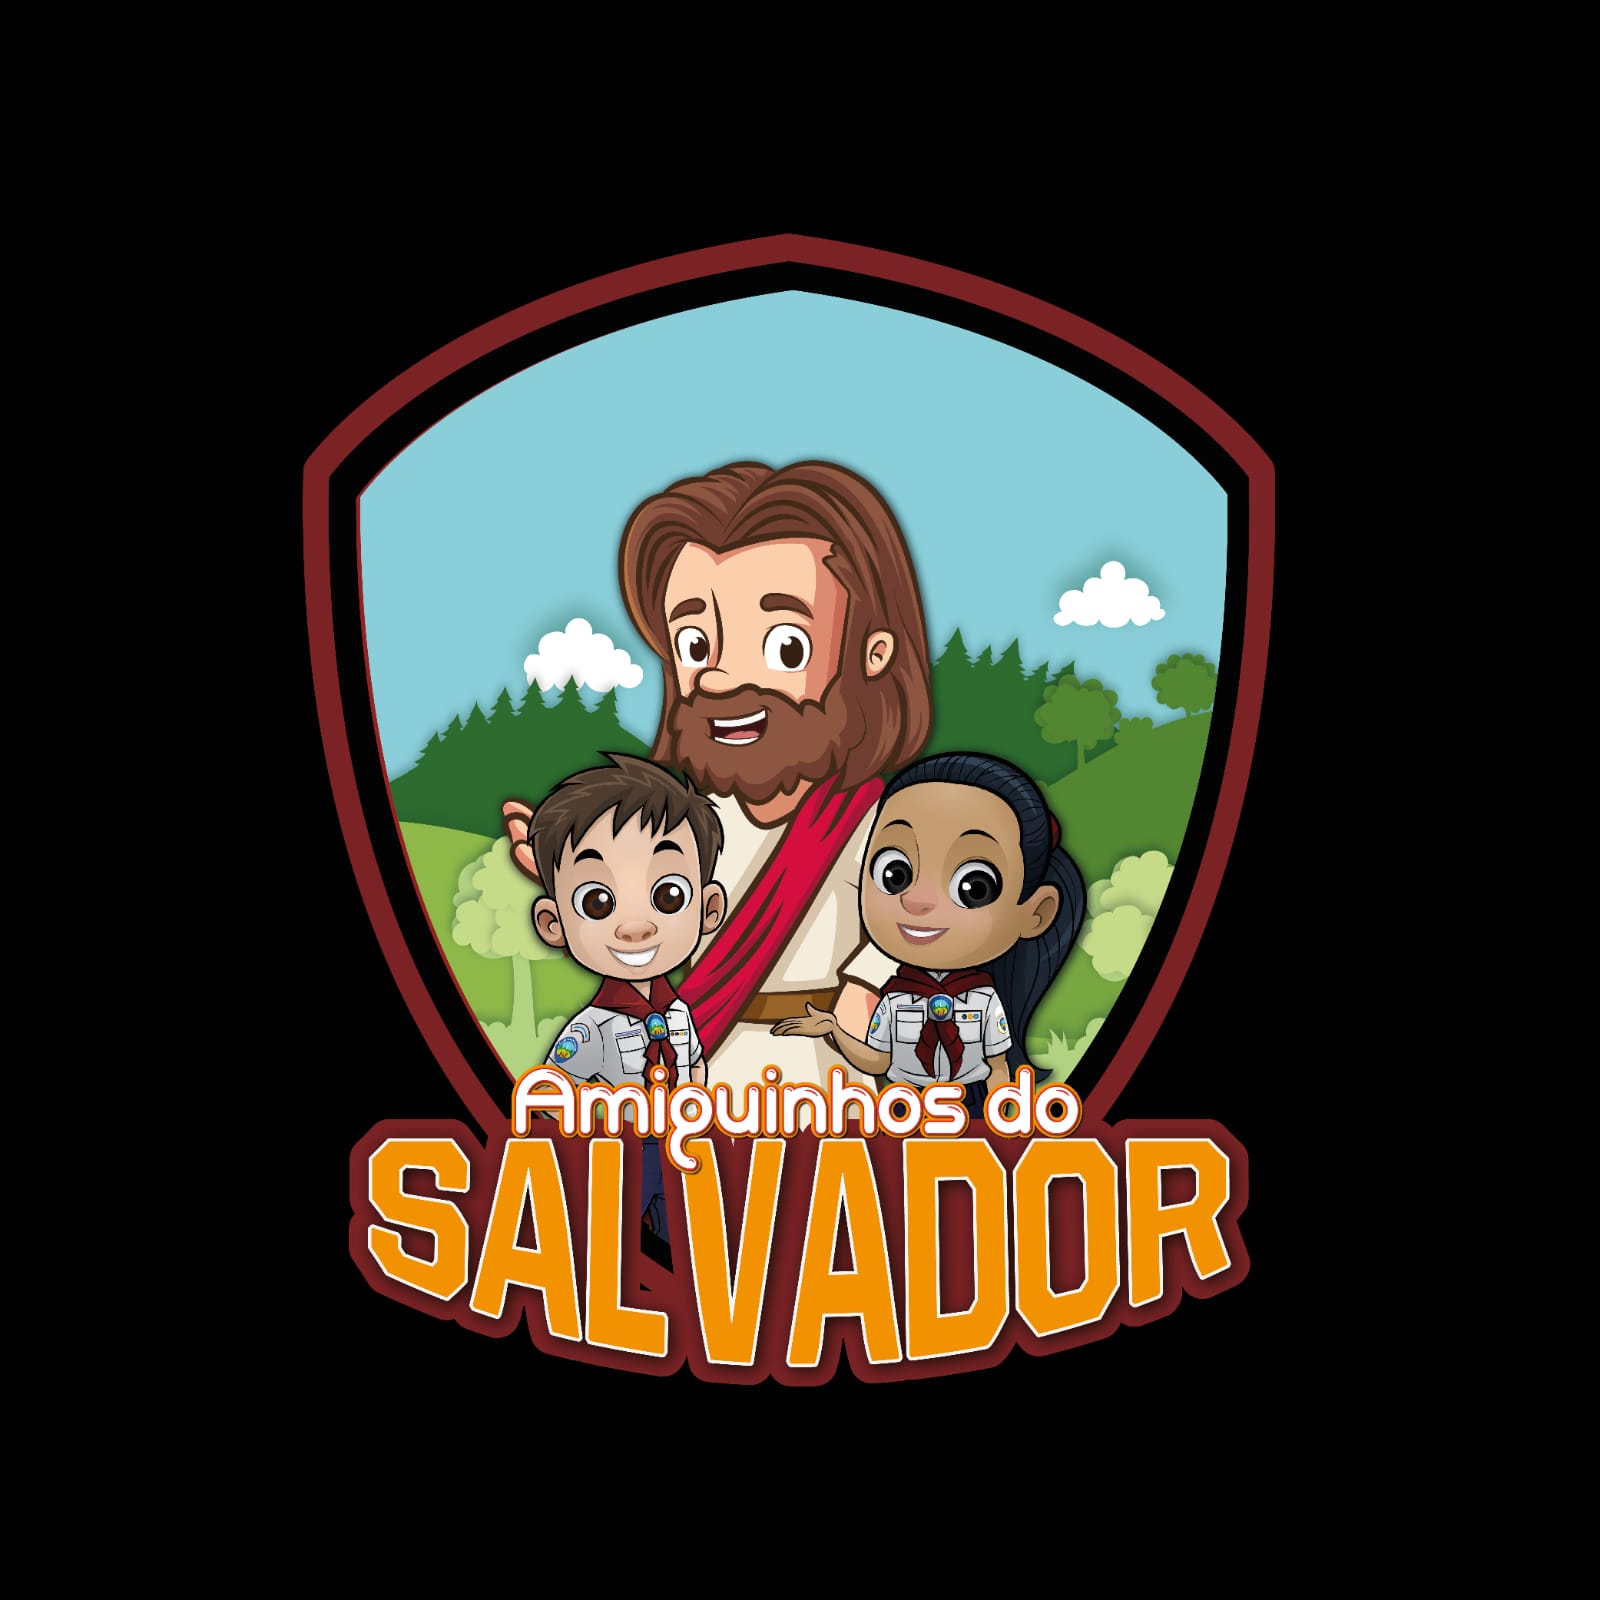 Amiguinhos do Salvador